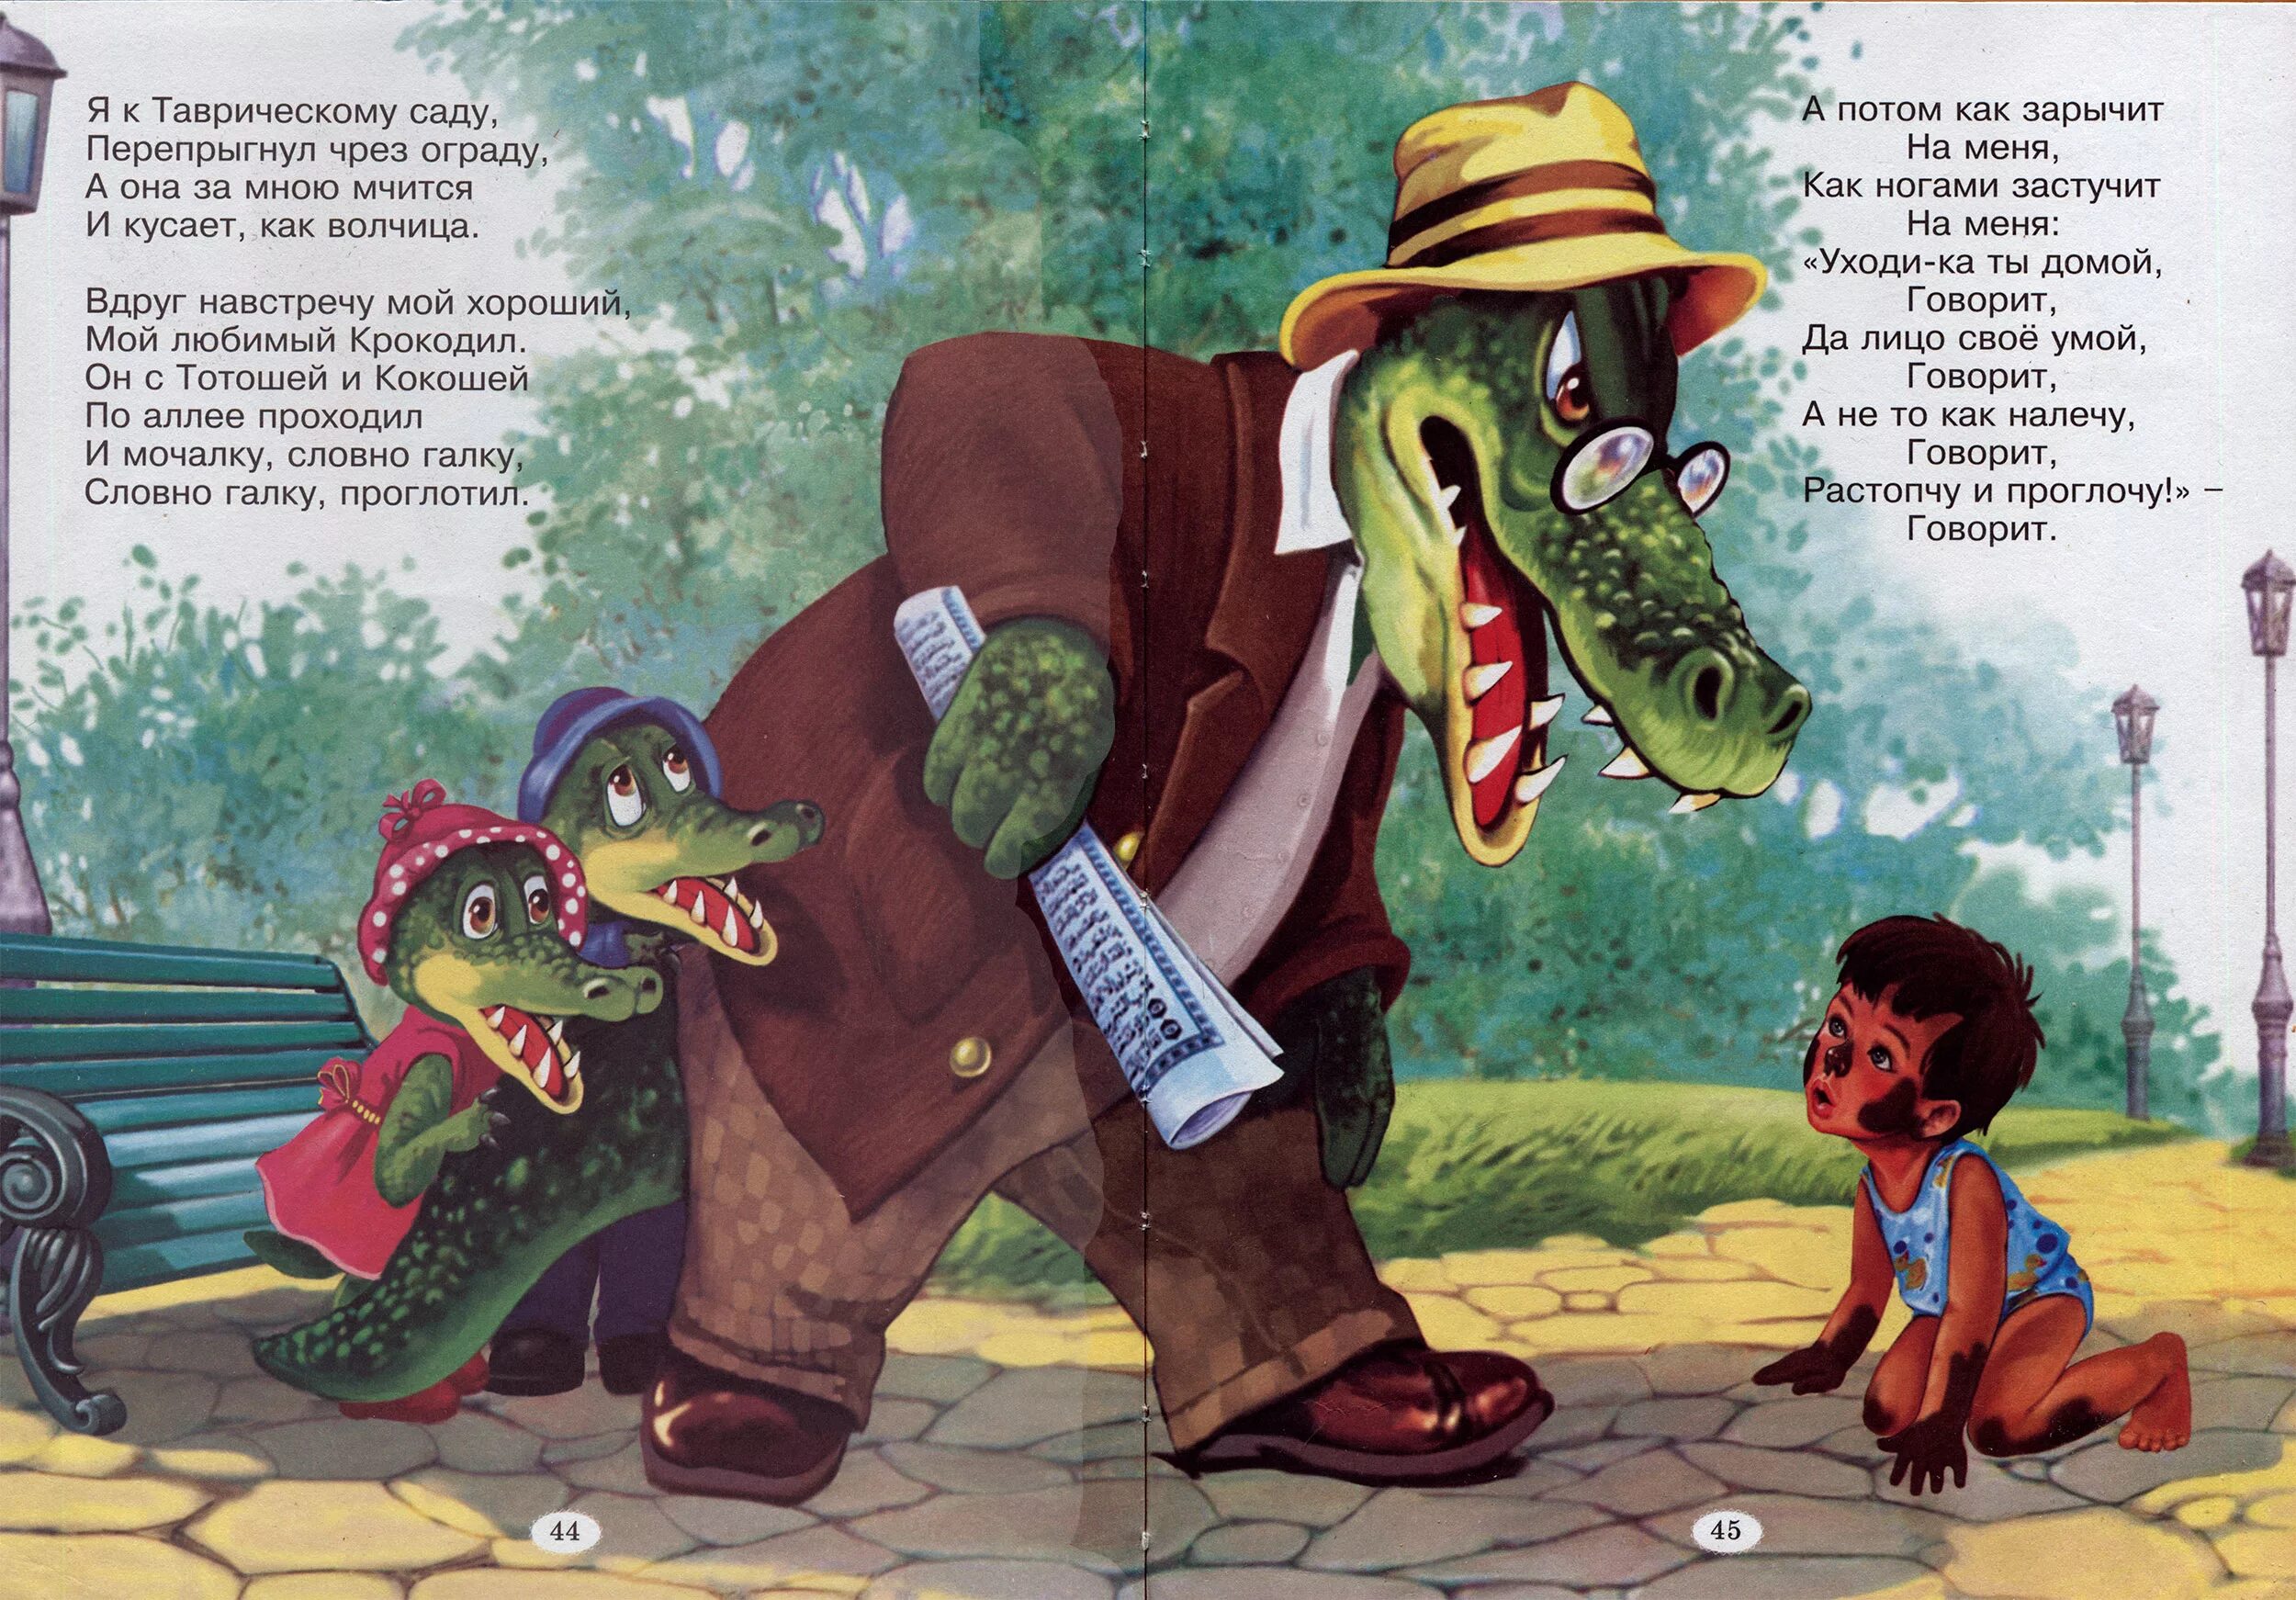 Чуковский крокодил с Тотошей и Кокошей. Иллюстрации крокодил Чуковского для детей. Чуковский Мойдодыр крокодил. Читать про крокодила